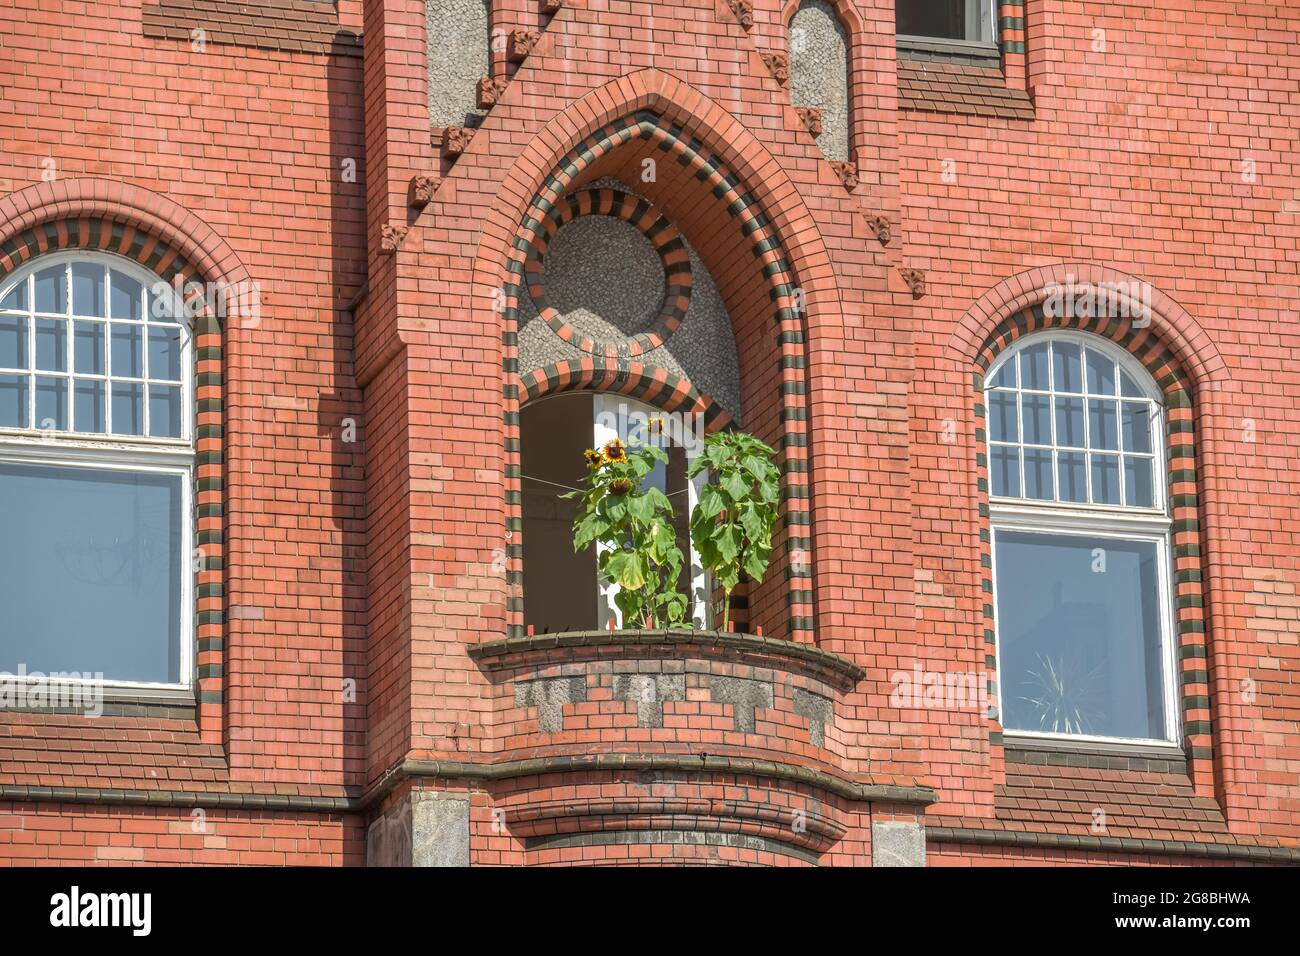 Sonnenblumen, Balkon, Altes Rathaus, Schlossstrasse, Steglitz, Berlin, Deutschland Stock Photo